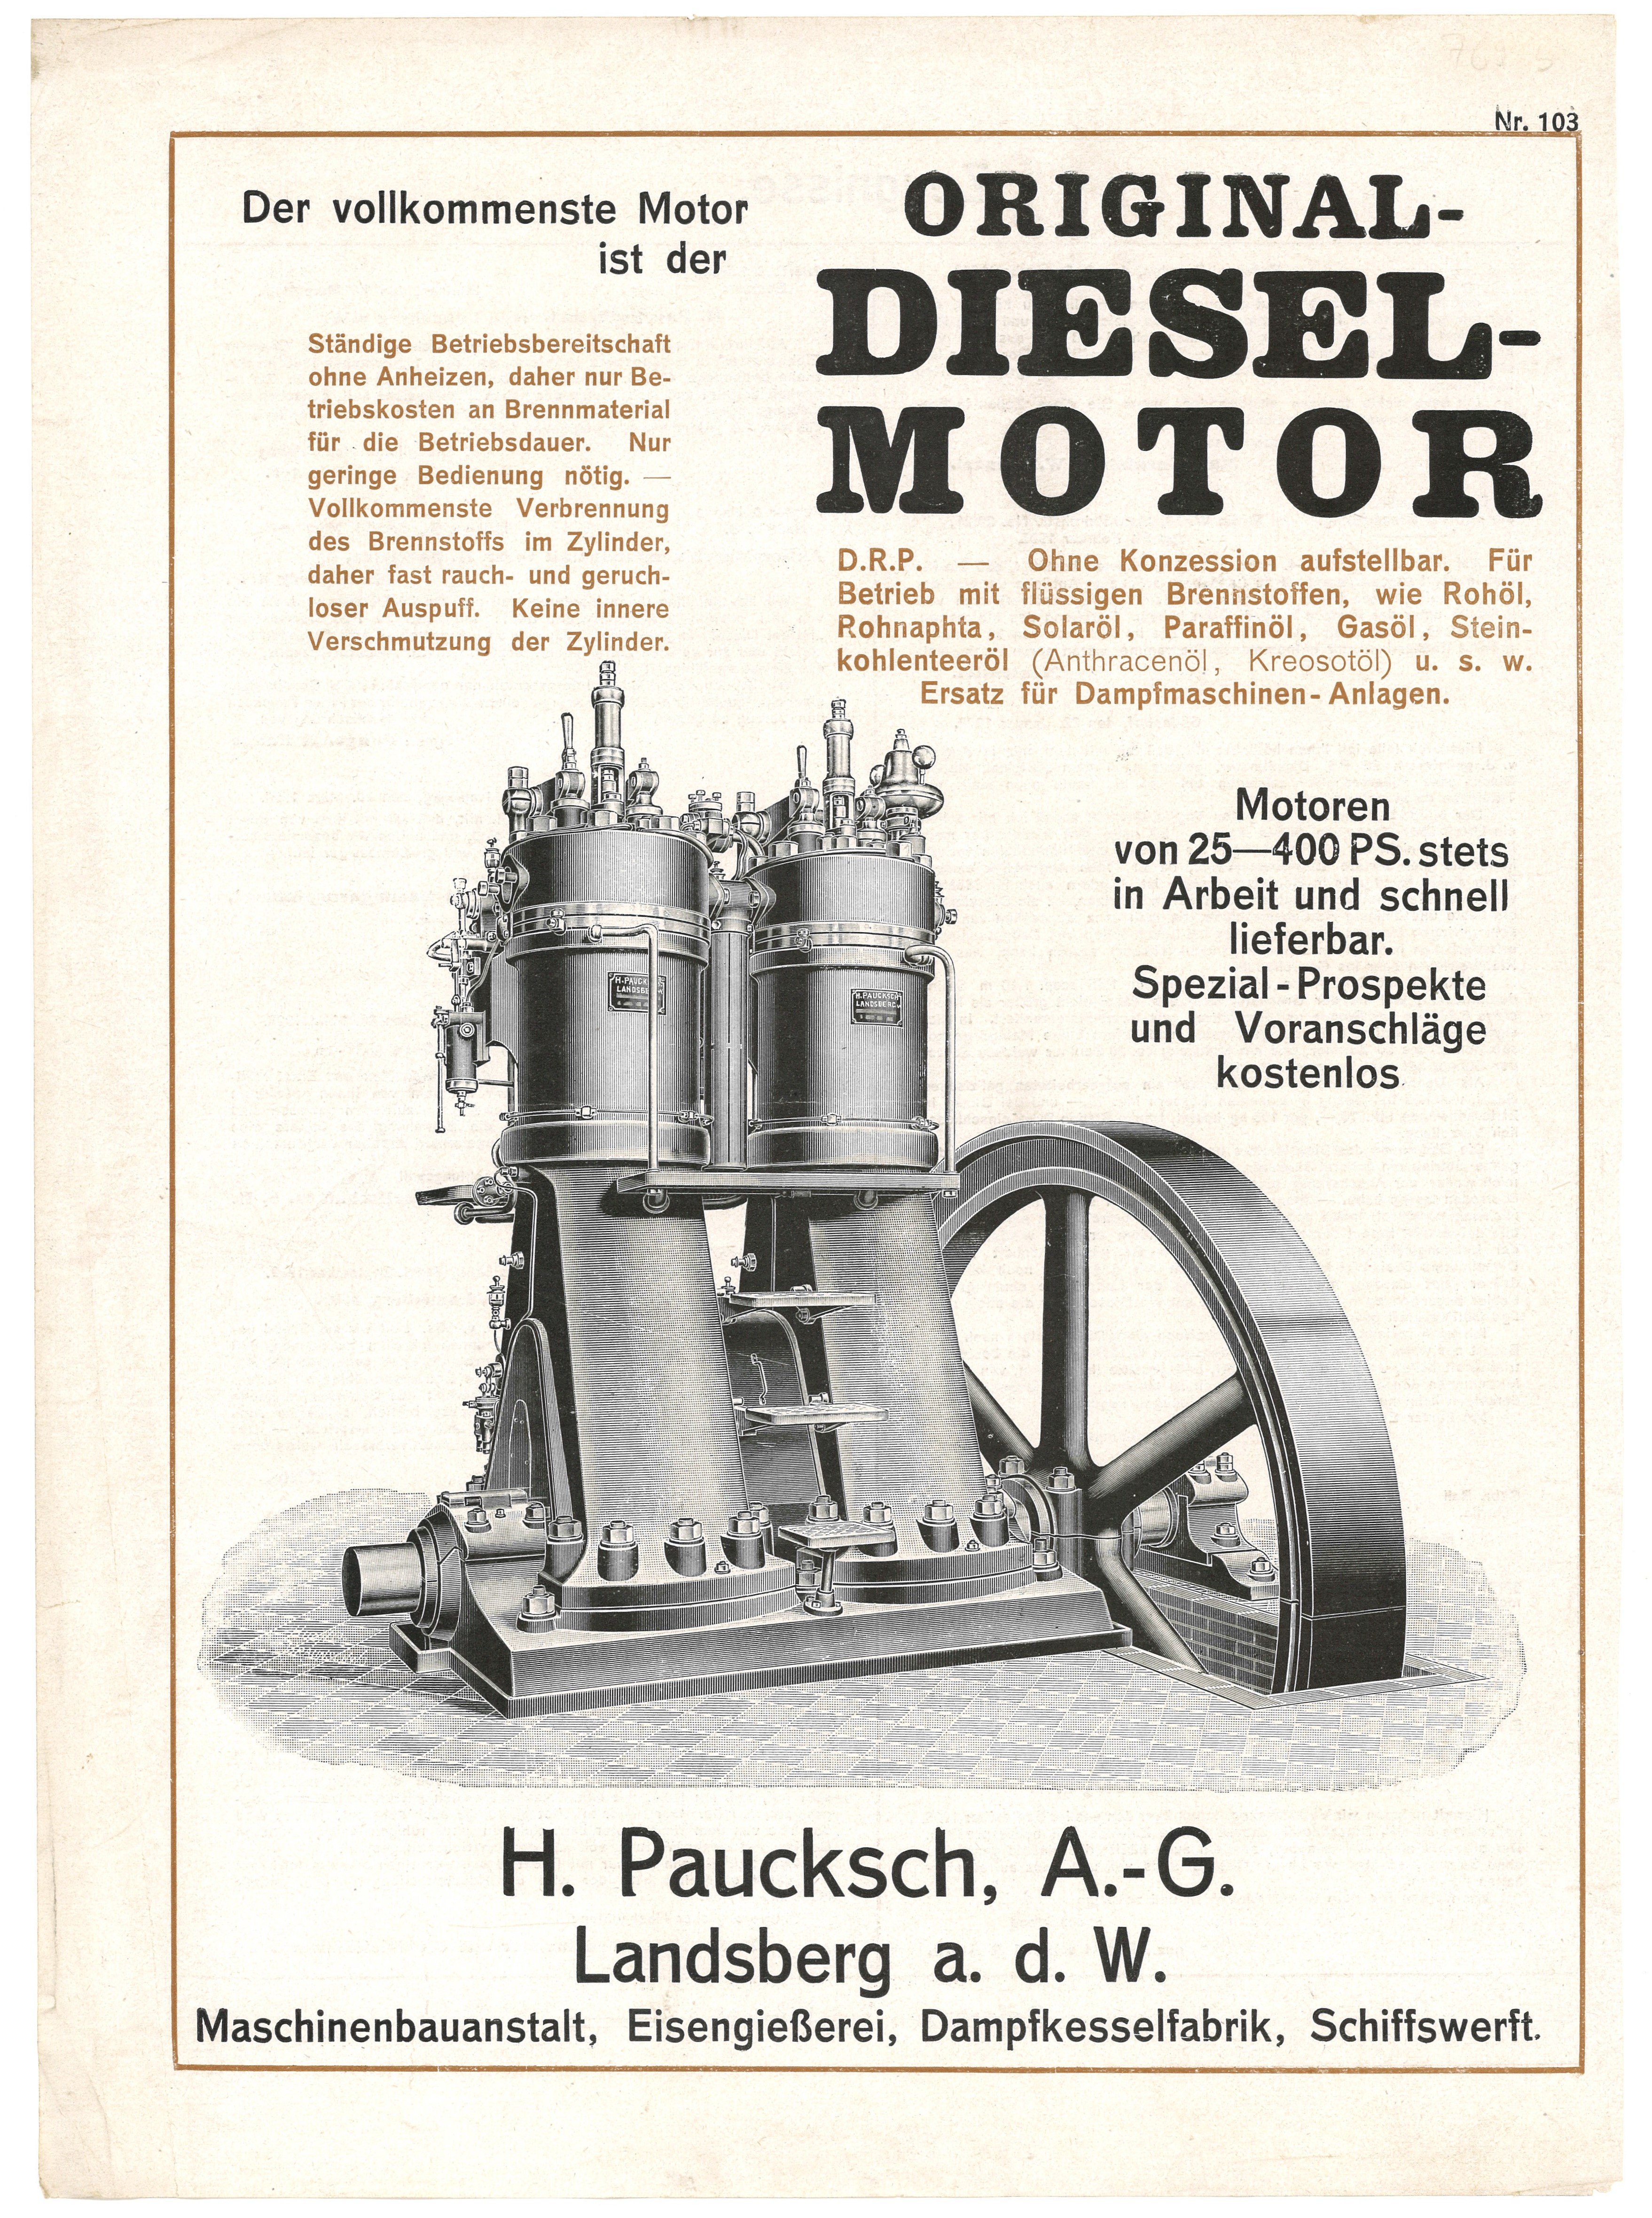 Werbeblatt der Maschinenfabrik H. Paucksch AG in Landsberg/Warthe [Gorzów Wlkp.] für Original-Diesel-Motor (1910) (Landesgeschichtliche Vereinigung für die Mark Brandenburg e.V., Archiv CC BY)